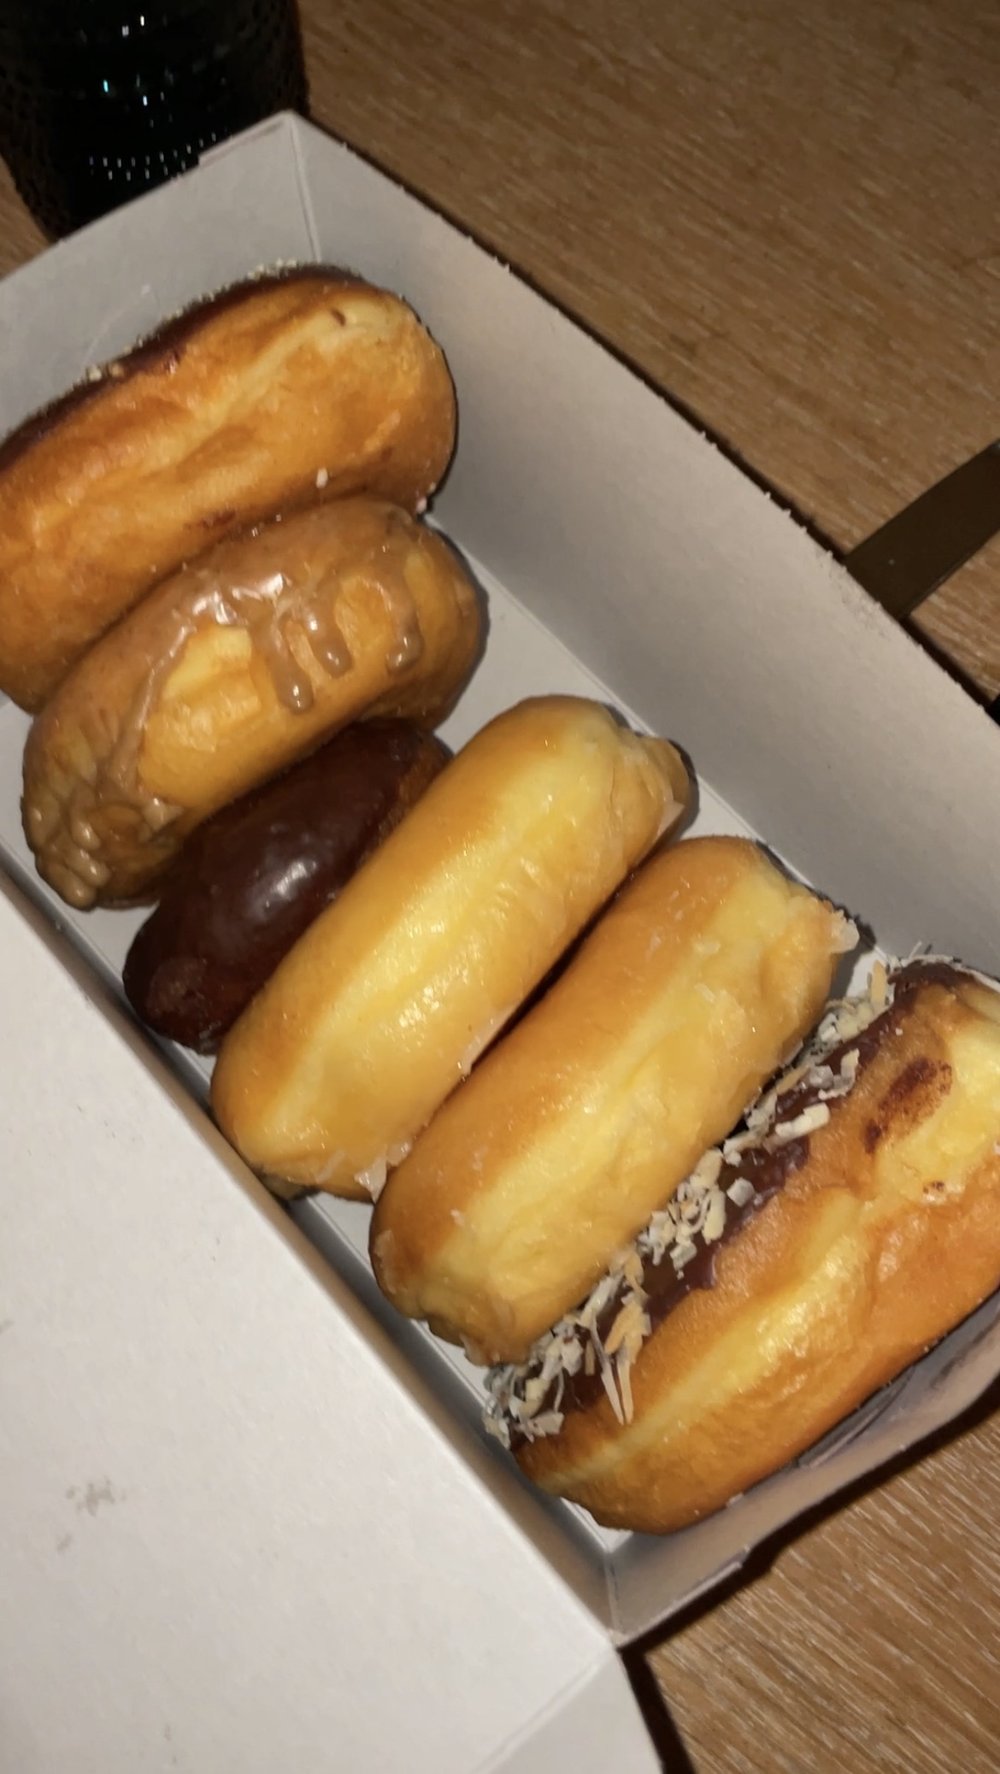 Bobs Donuts